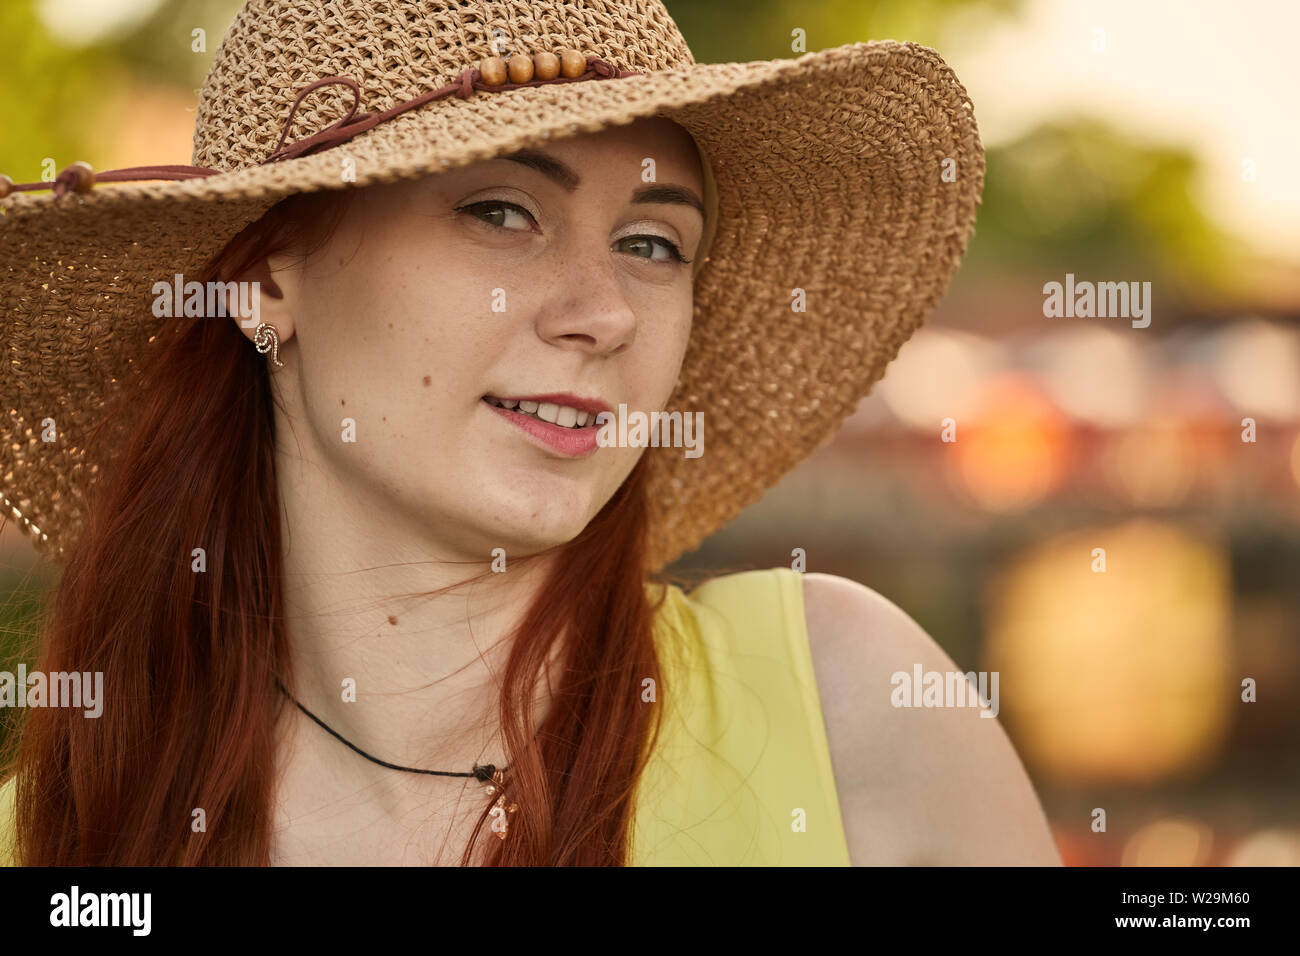 Bella Capelli rossi ragazza nel cappello per il sole guardando la telecamera, sorridente, tonica immagine Foto Stock